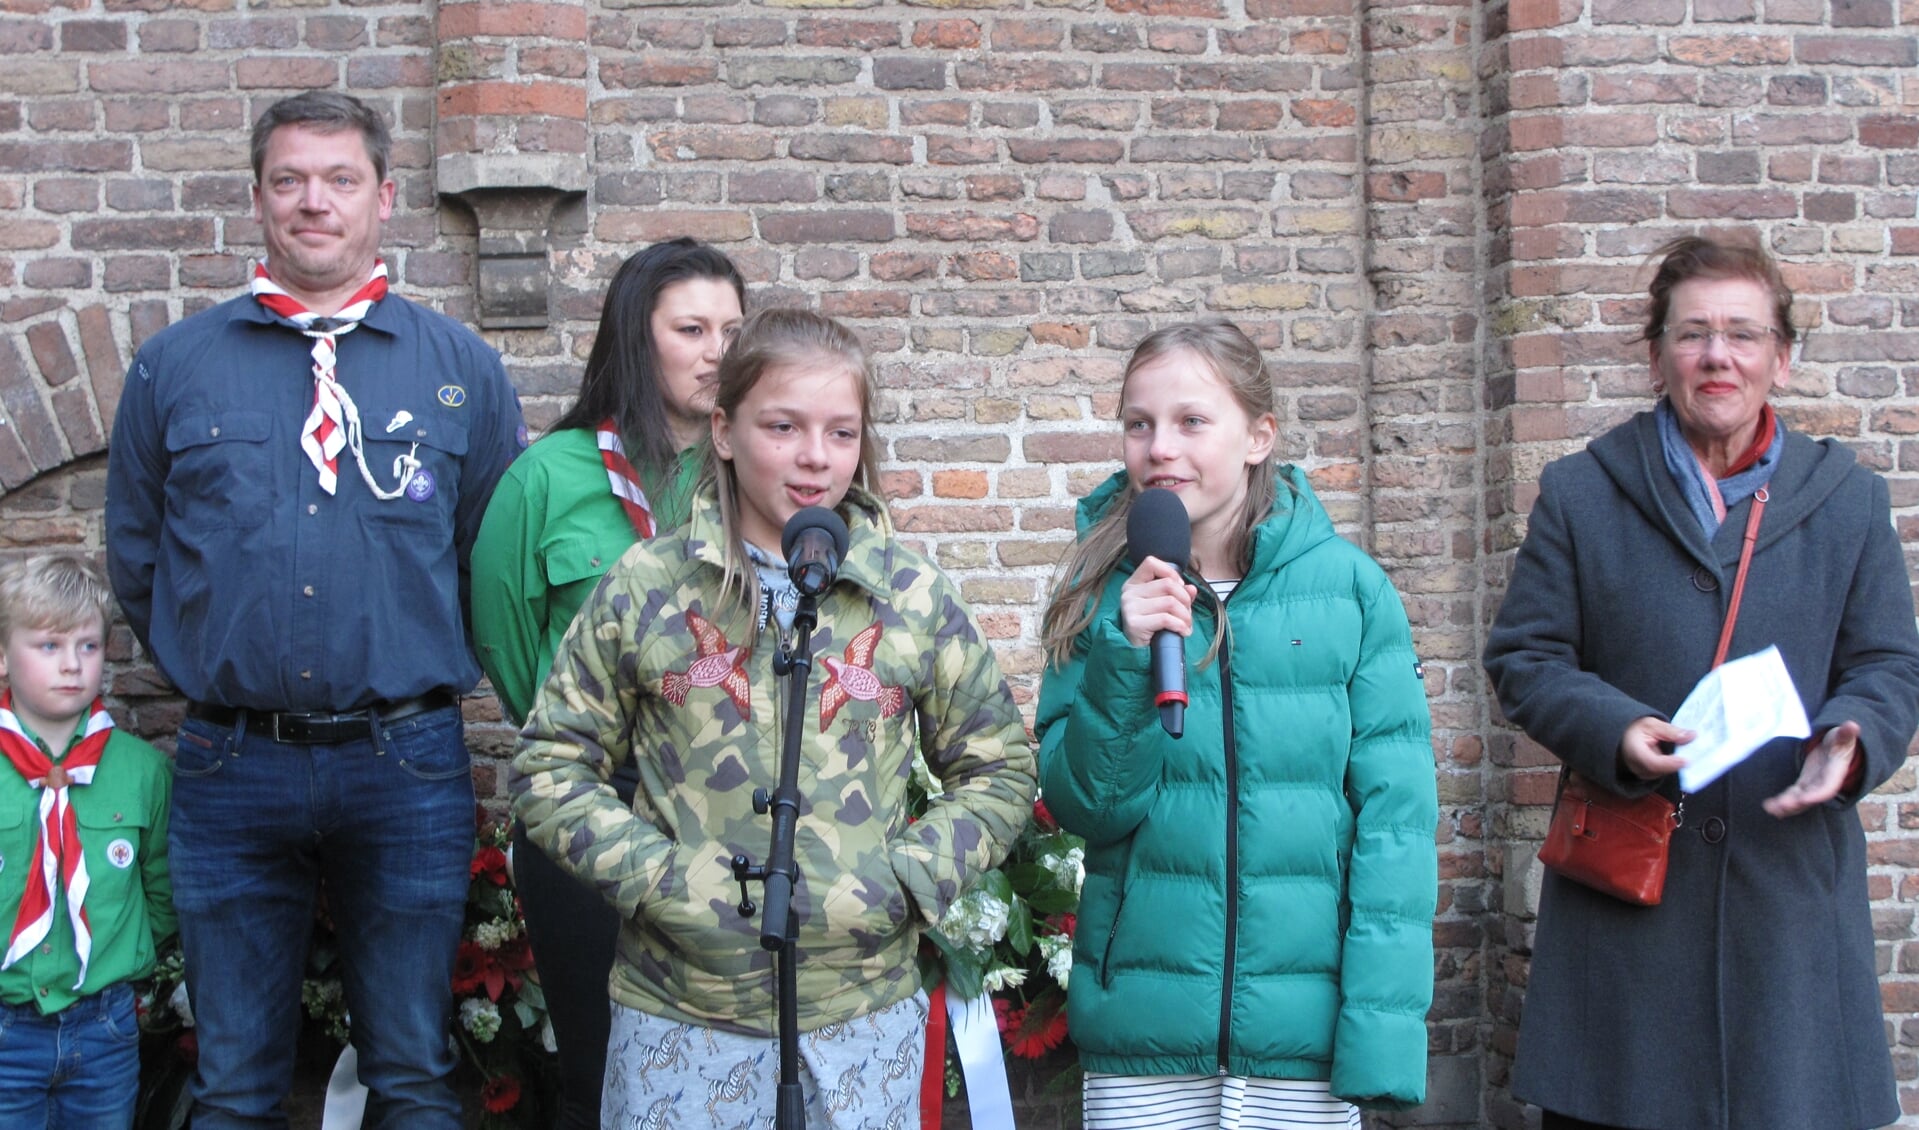 Ione en Liz, leerlingen van OBS Meester Eeuwout, dragen een zelfgemaakt gedicht voor